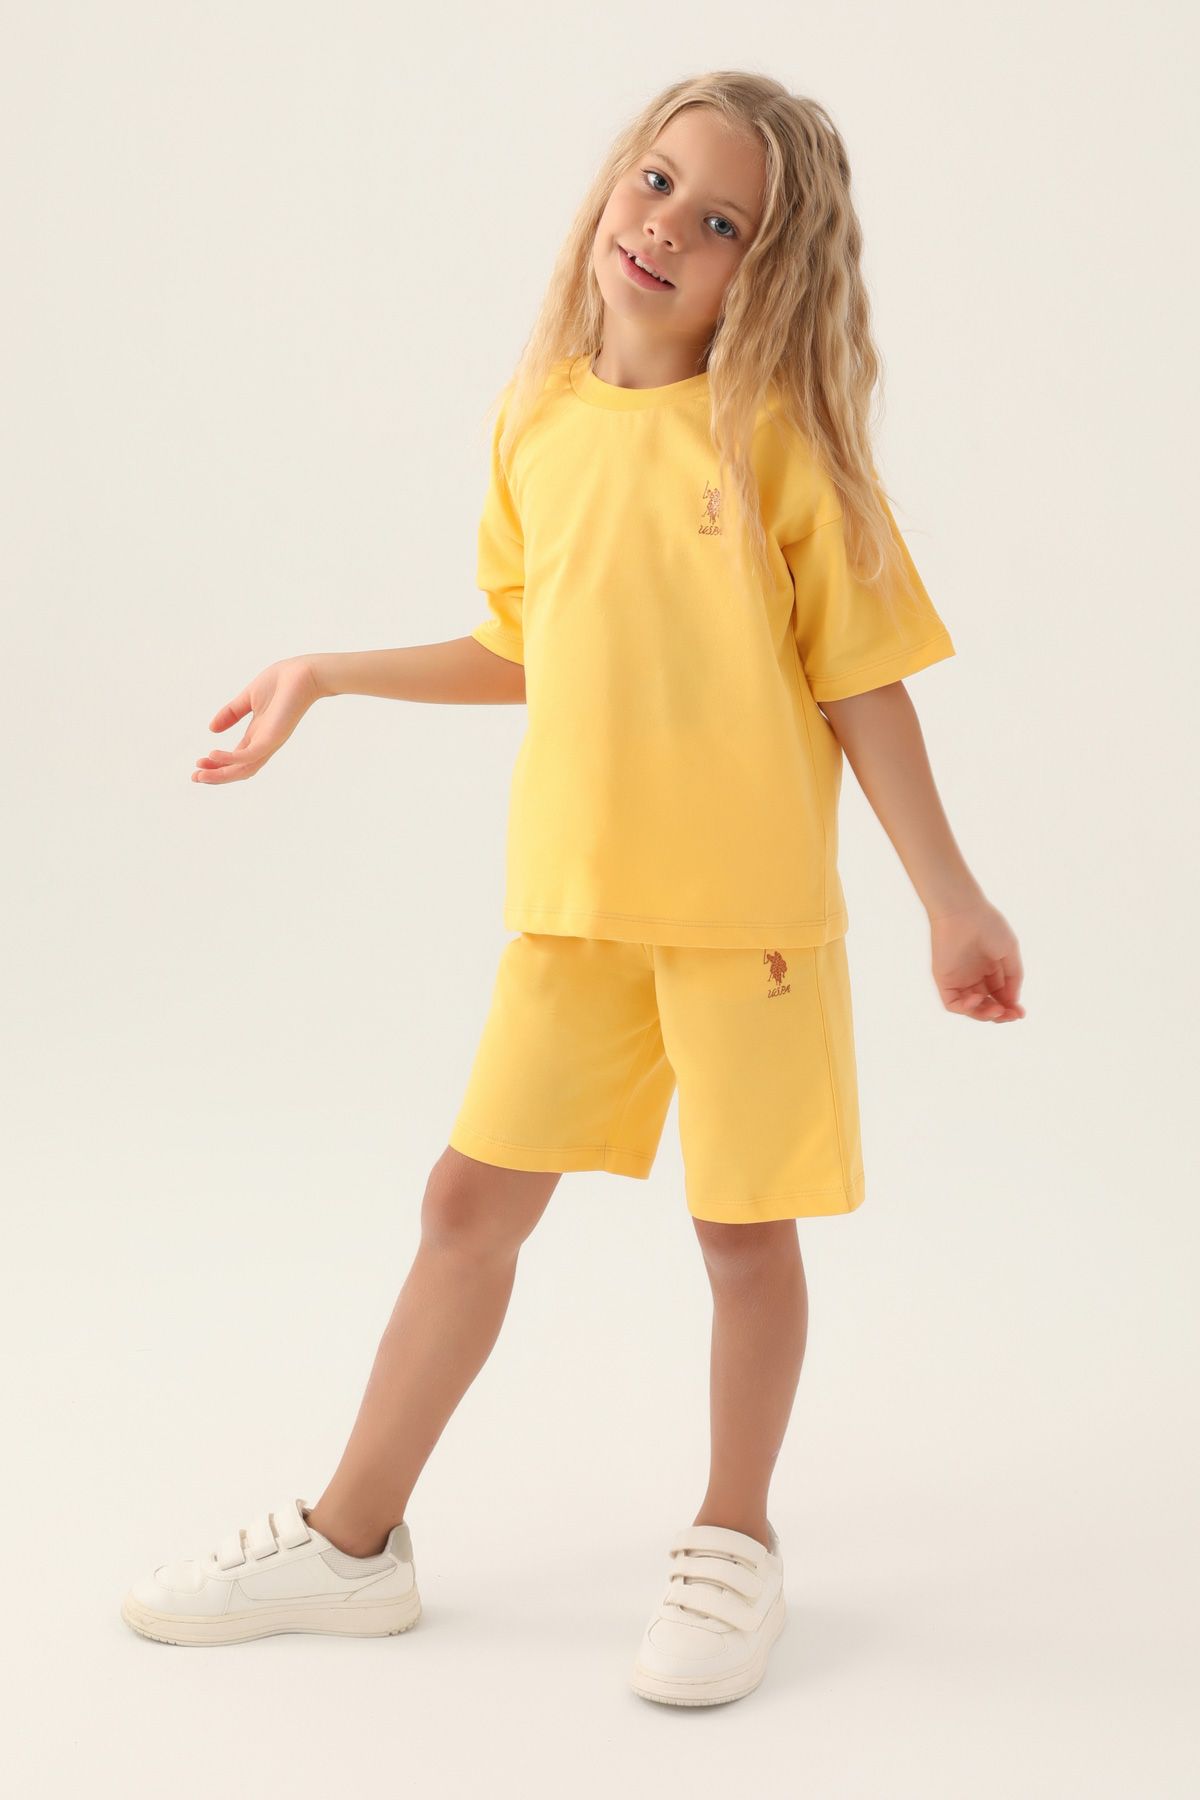 Костюм повседневный детский U.S. POLO Assn. US1822-V1, желтый, 128 костюм повседневный детский u s polo assn us1822 v1 розовая пудра 146